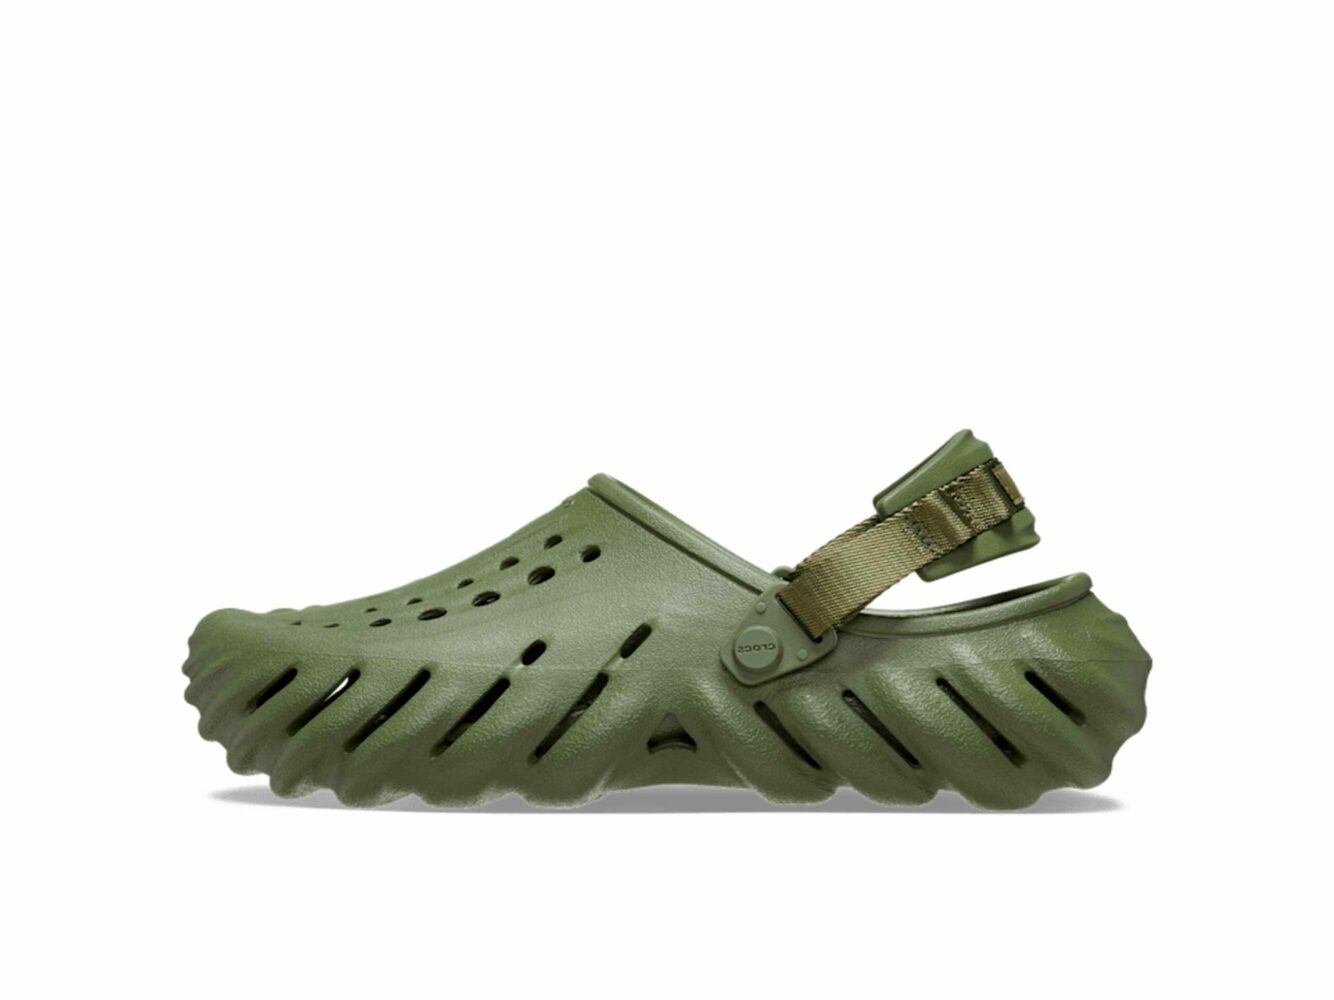 crocs echo sabo army green 207937 купить